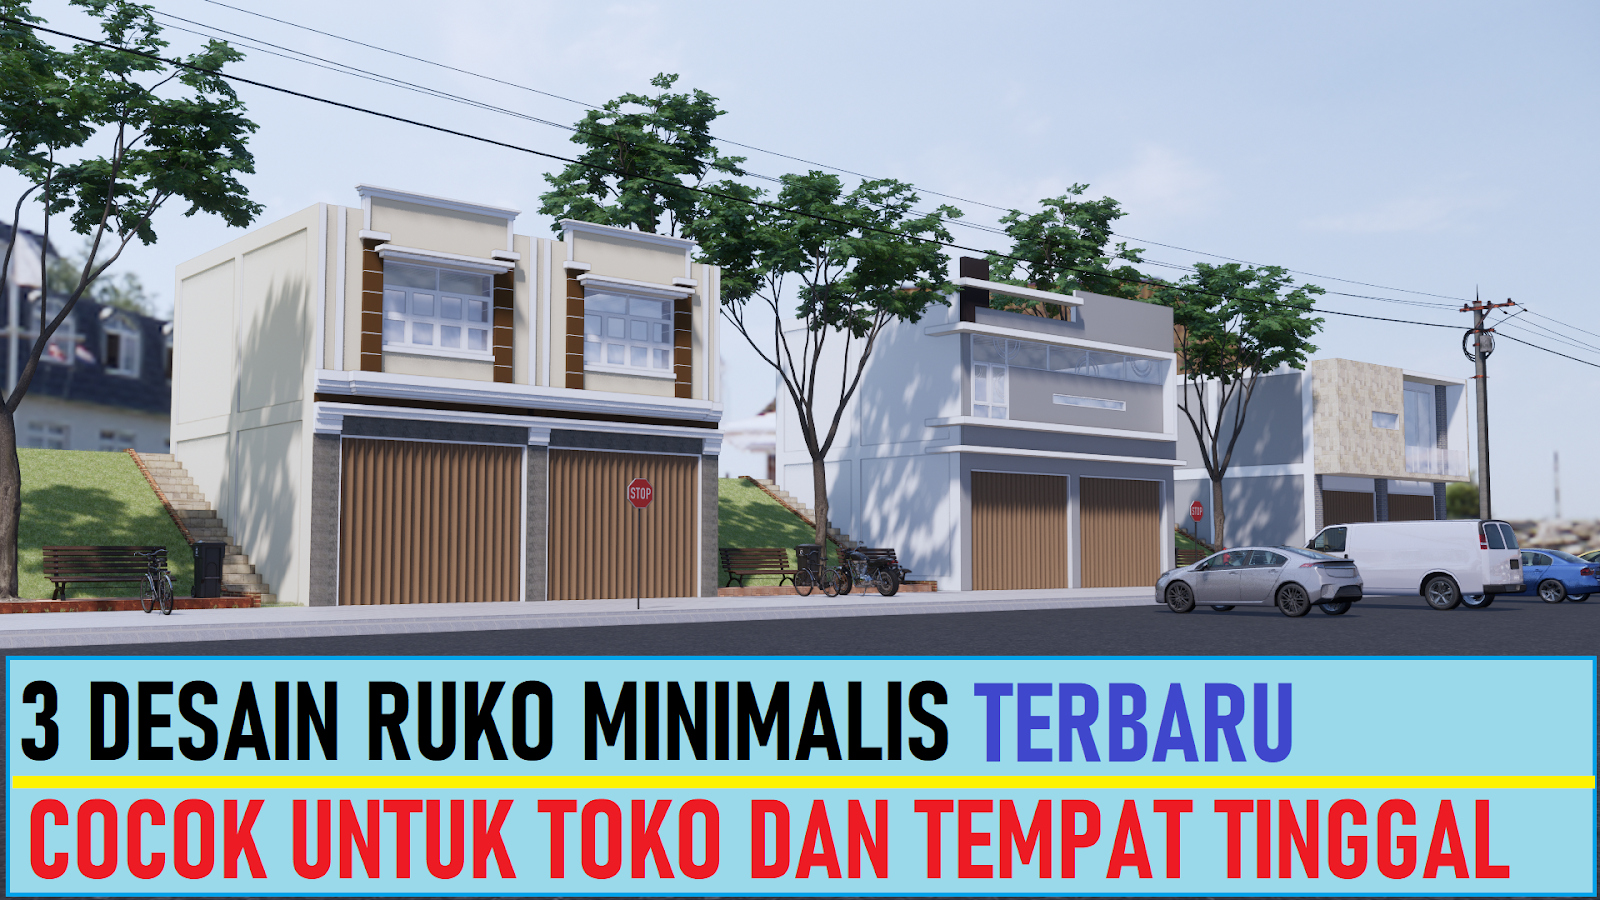 3 Desain Ruko Minimalis Untuk Toko Dan Tempat Tinggal Desain Rumah Minimalis